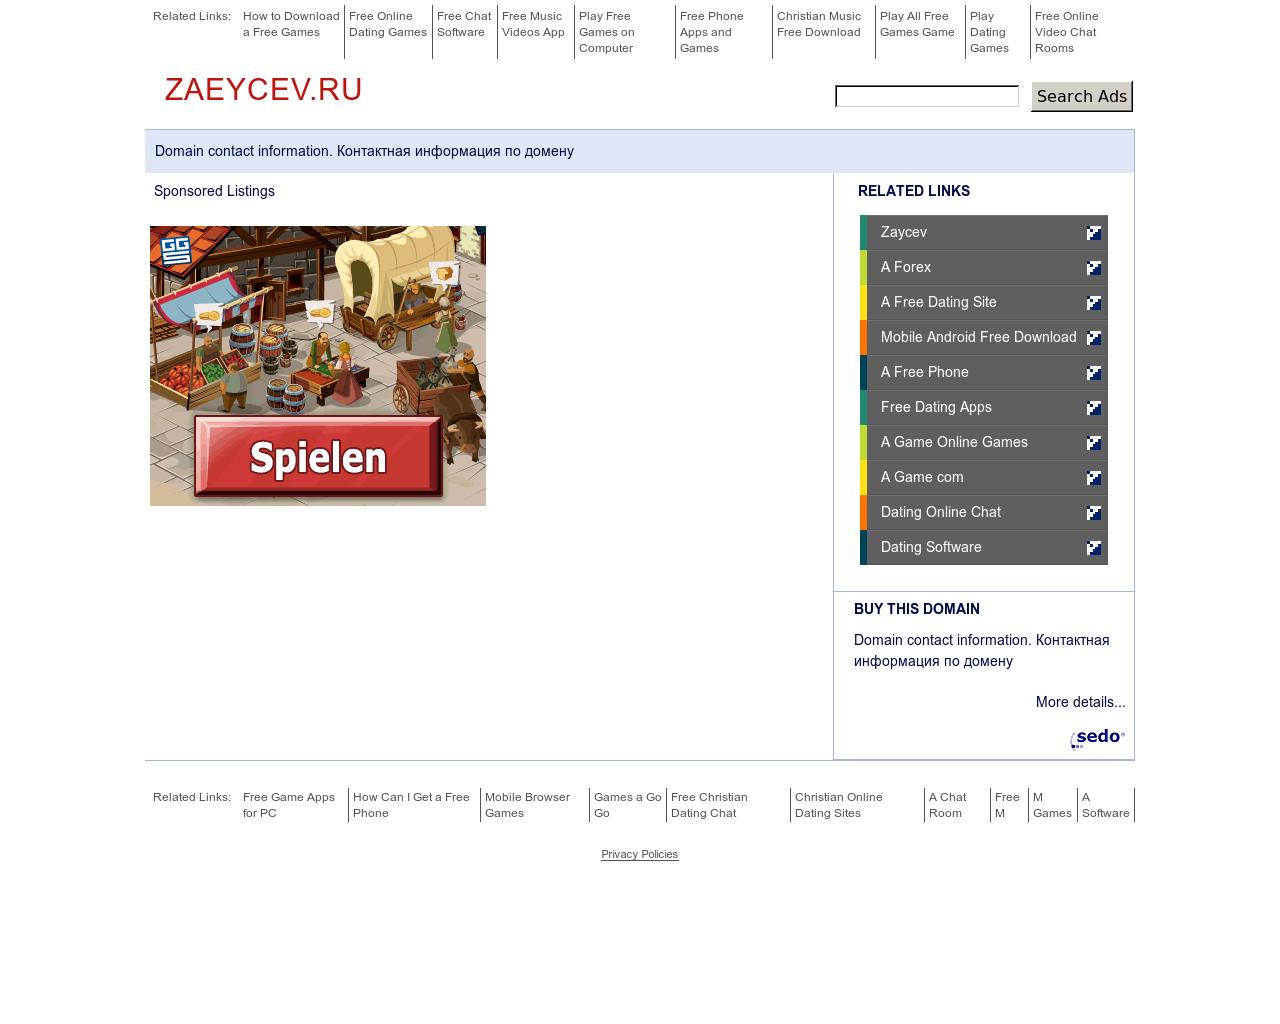 Изображение сайта zaeycev.ru в разрешении 1280x1024